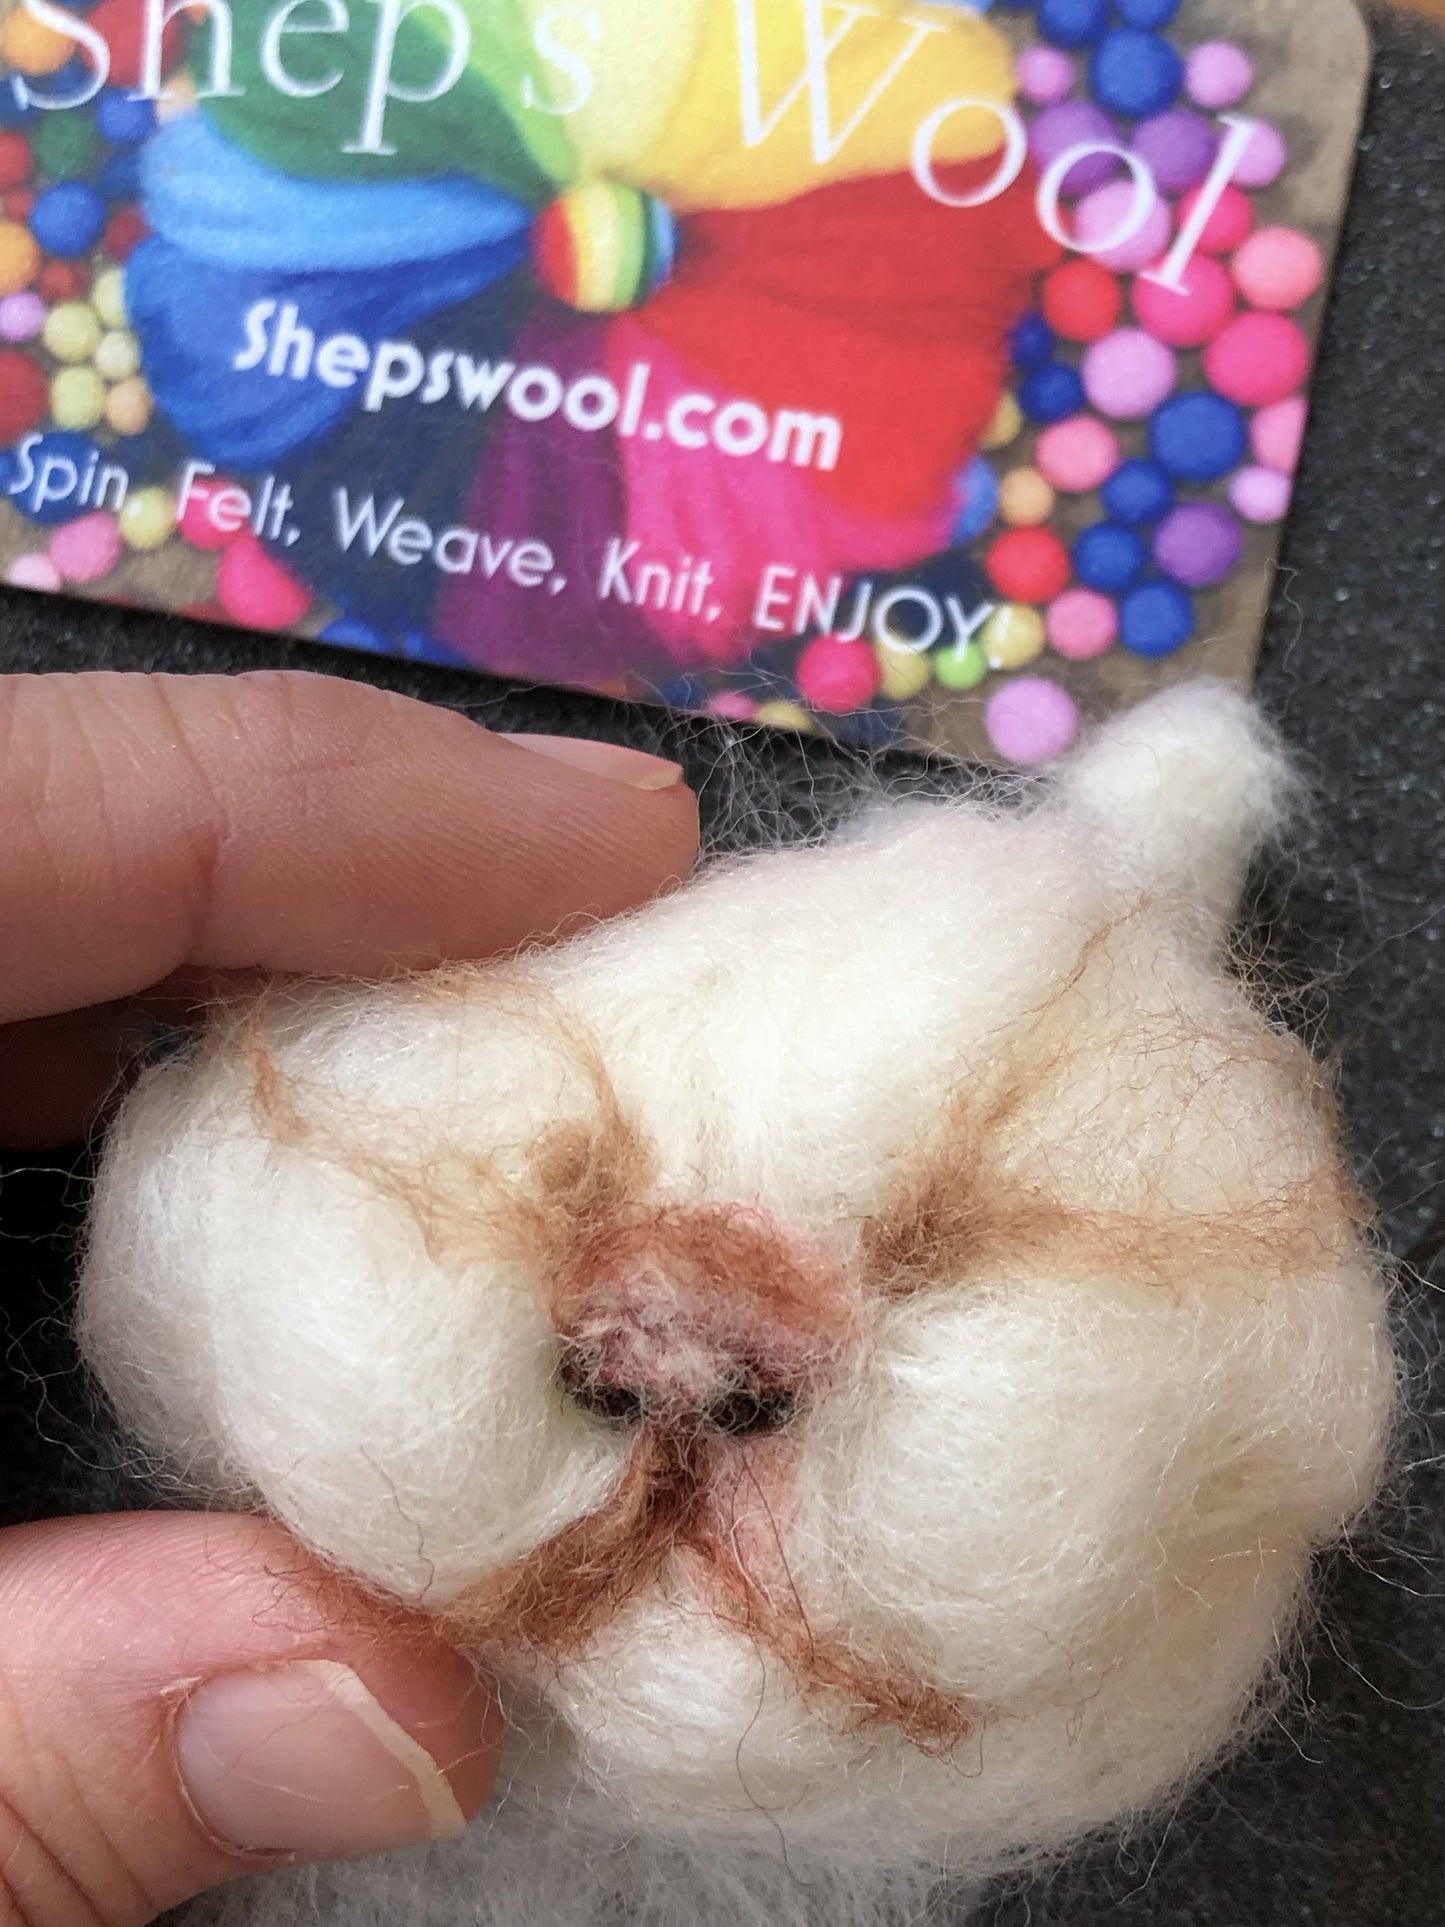 Premium White Wool Roving